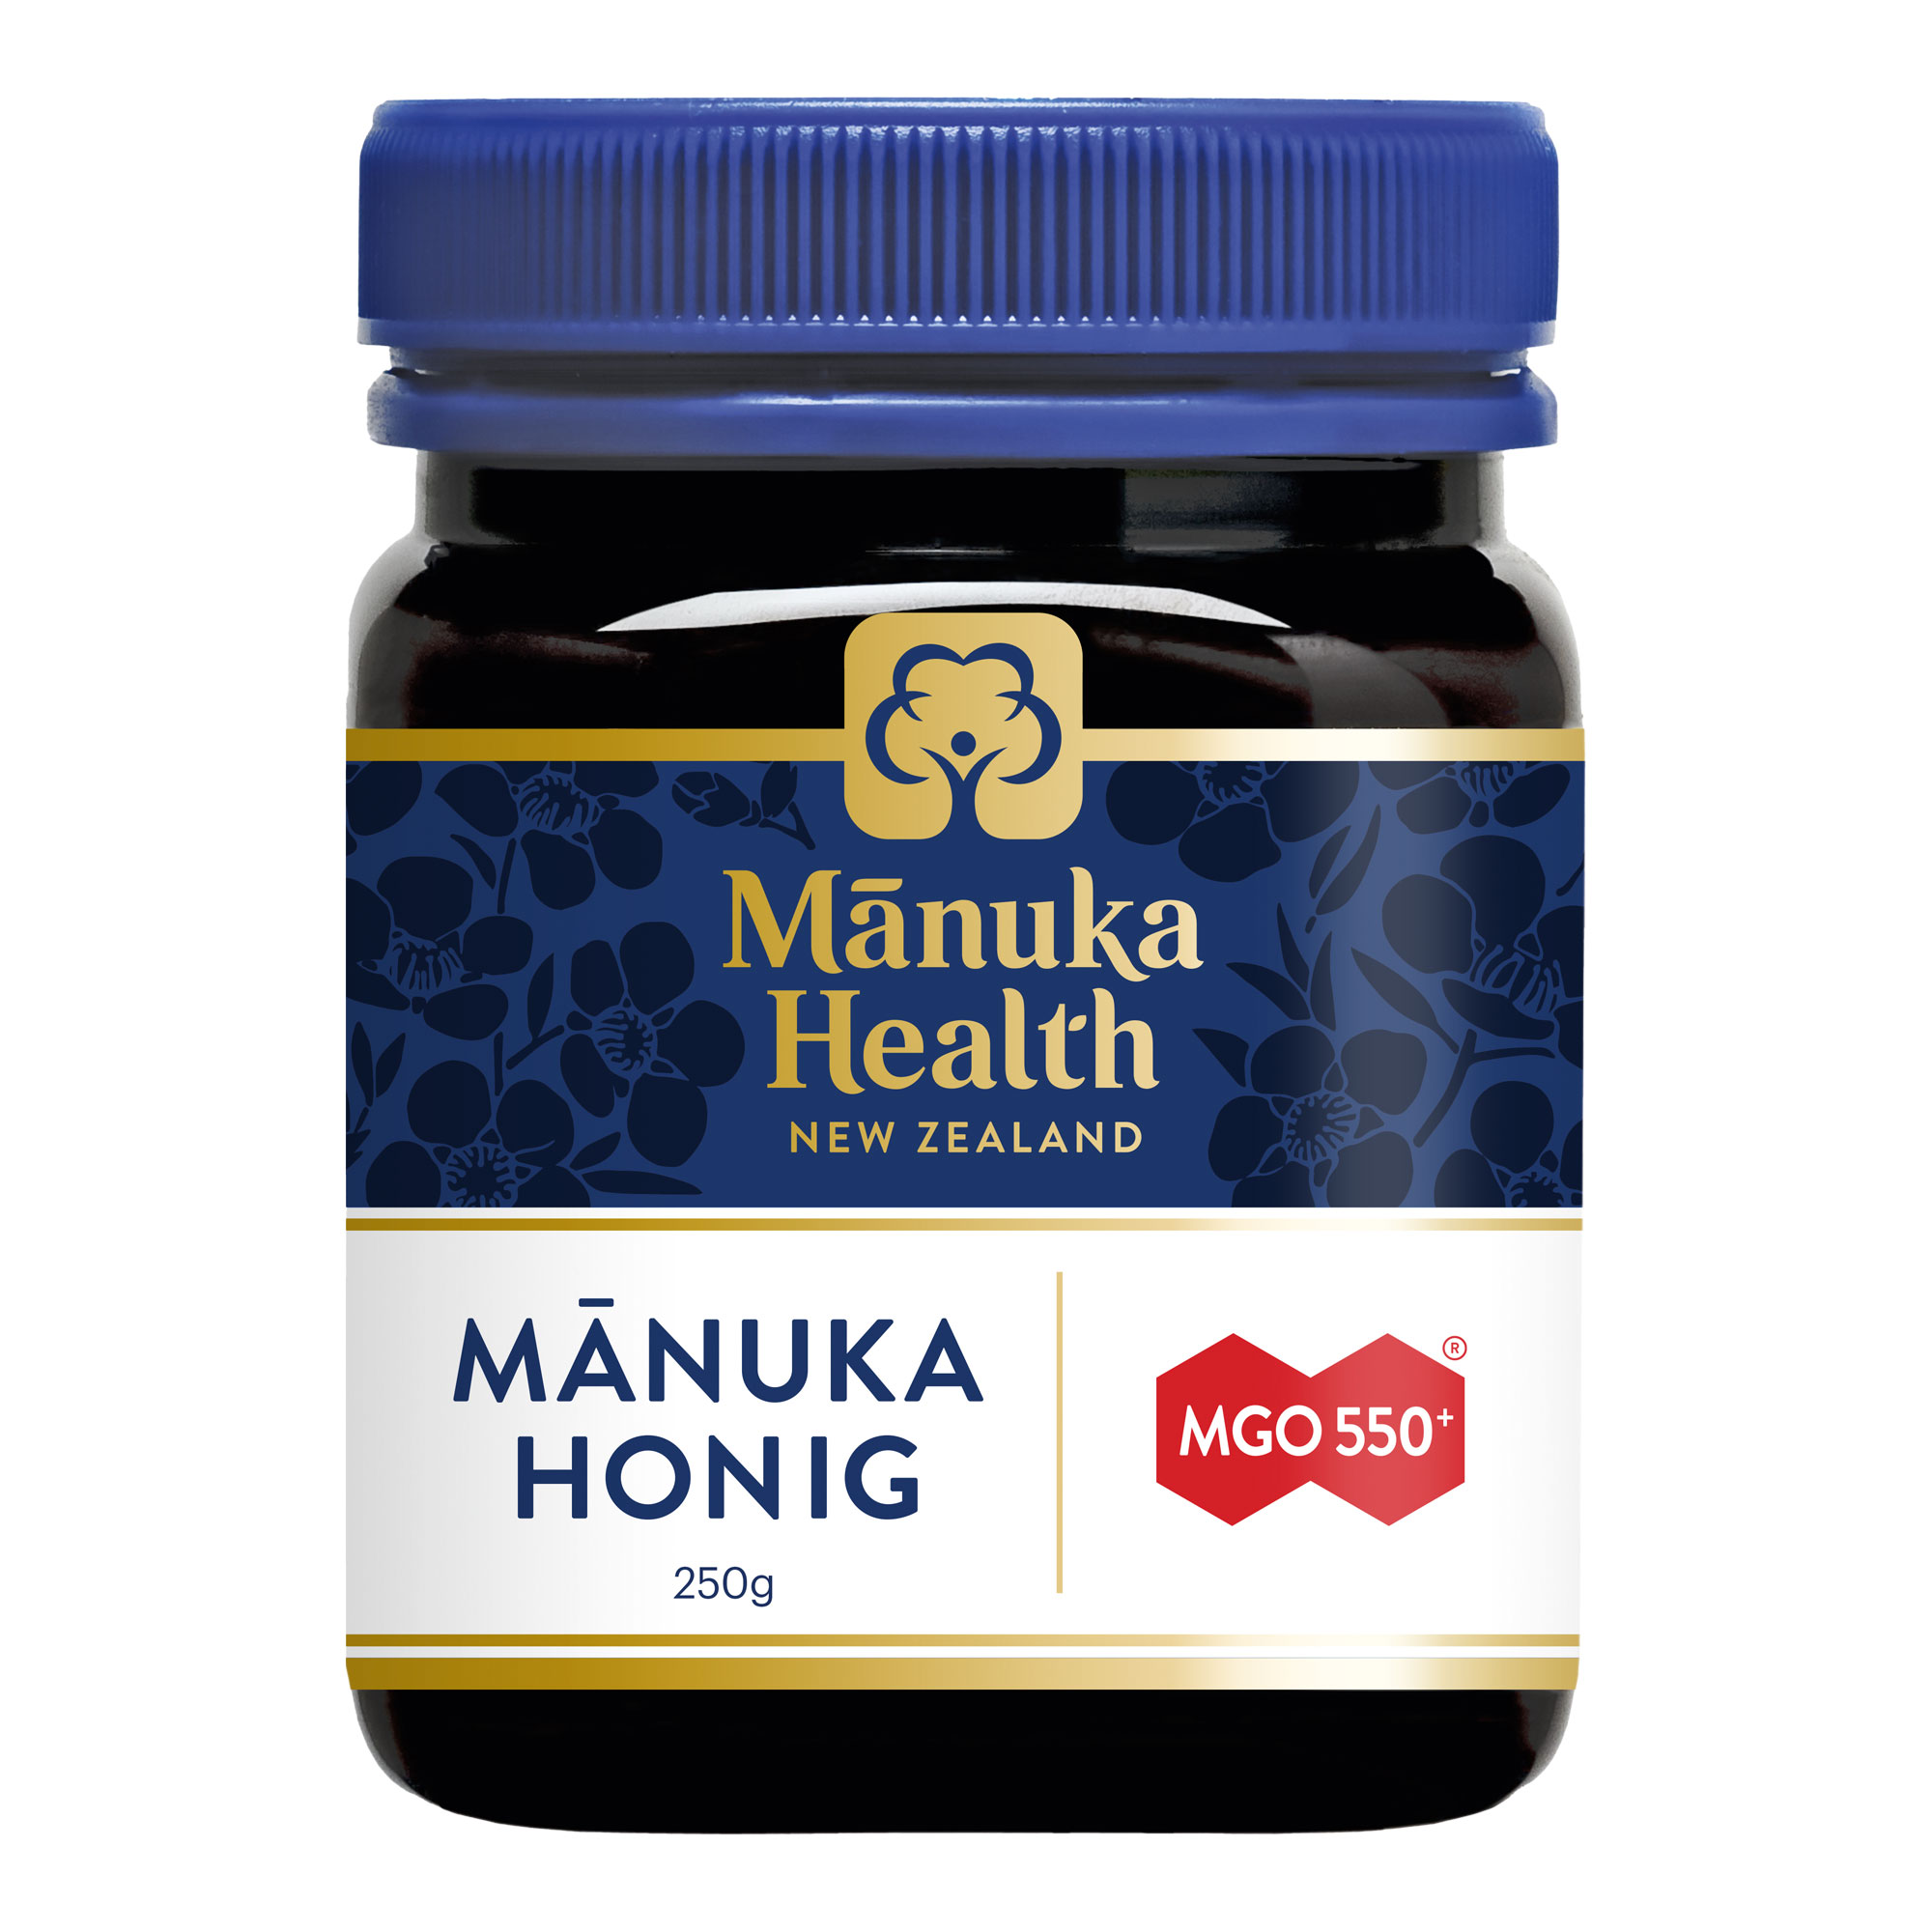 Manuka Honig zur Stärkung des allgemeinen Wohlbefindens. Mit Gehalt von mindestens 550 mg MGO.